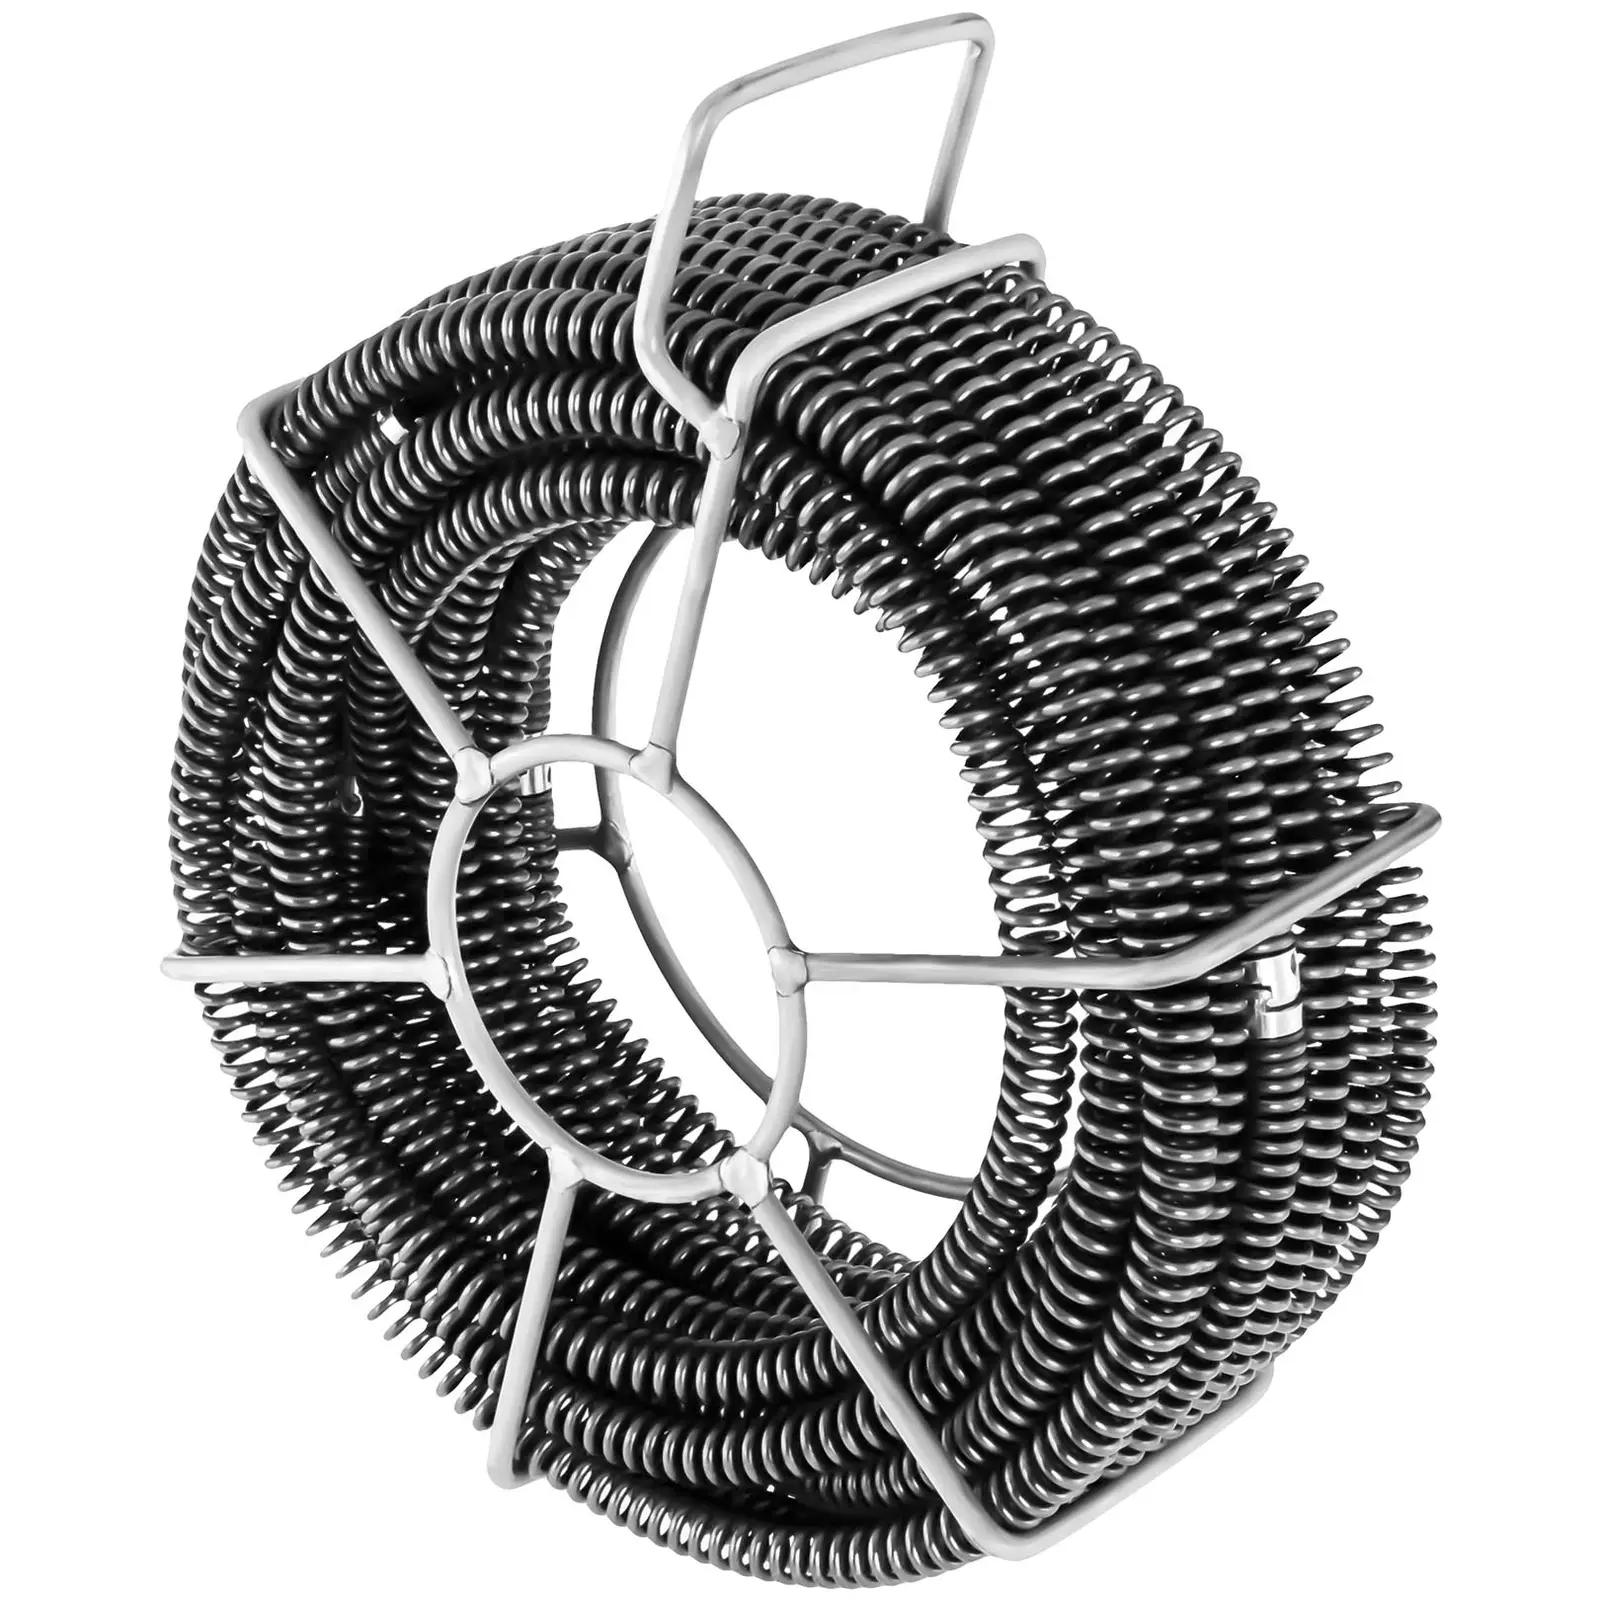 Spirala do rur - zestaw - 6 x 2,45 m / Ø 16 mm